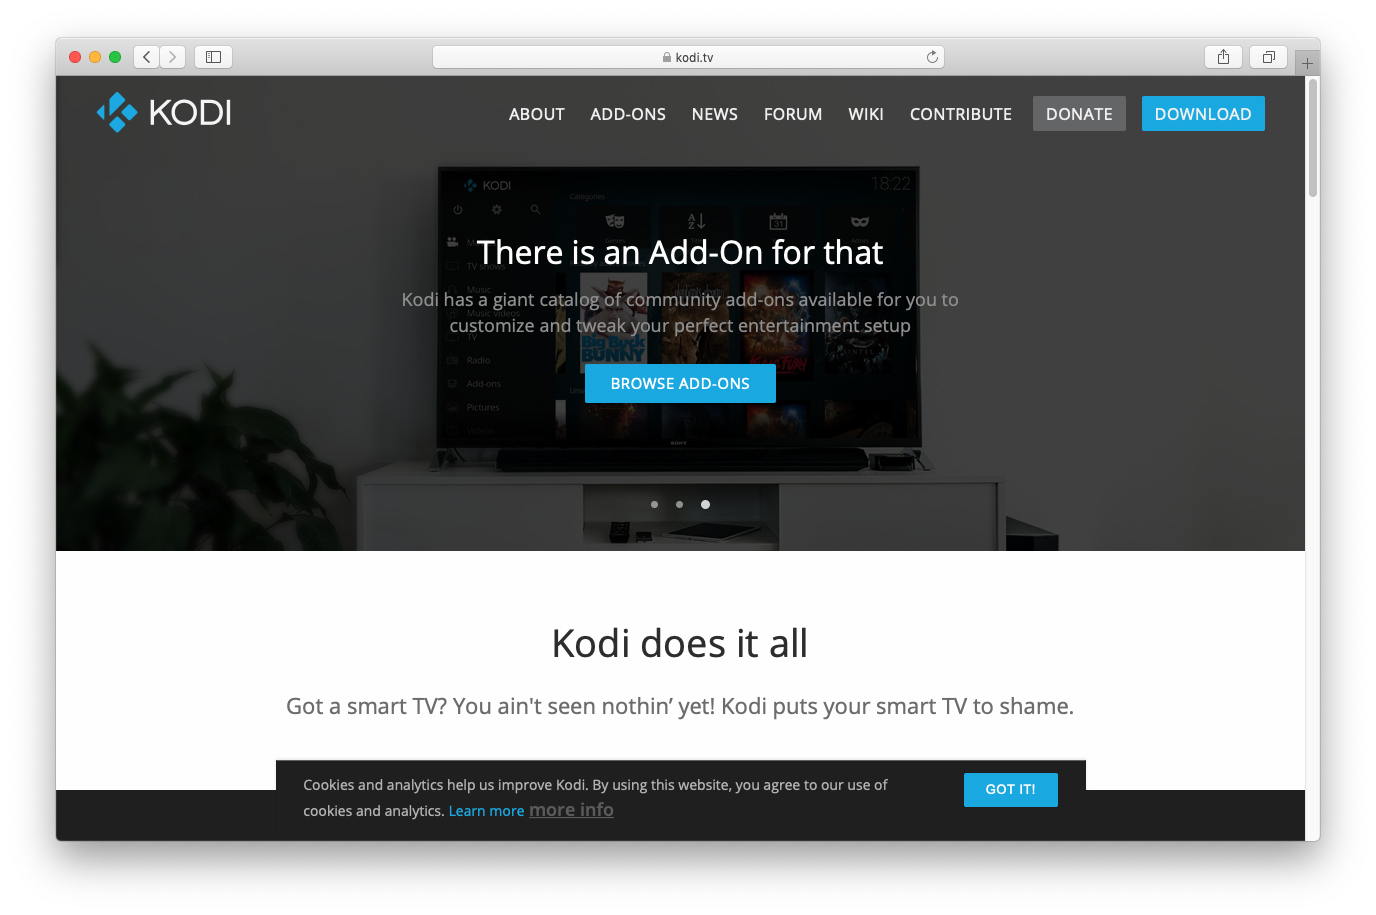 site-do-kodi-retorna-as-atividades-no-ar-novamente-e-com-ajuda-dos-usuarios